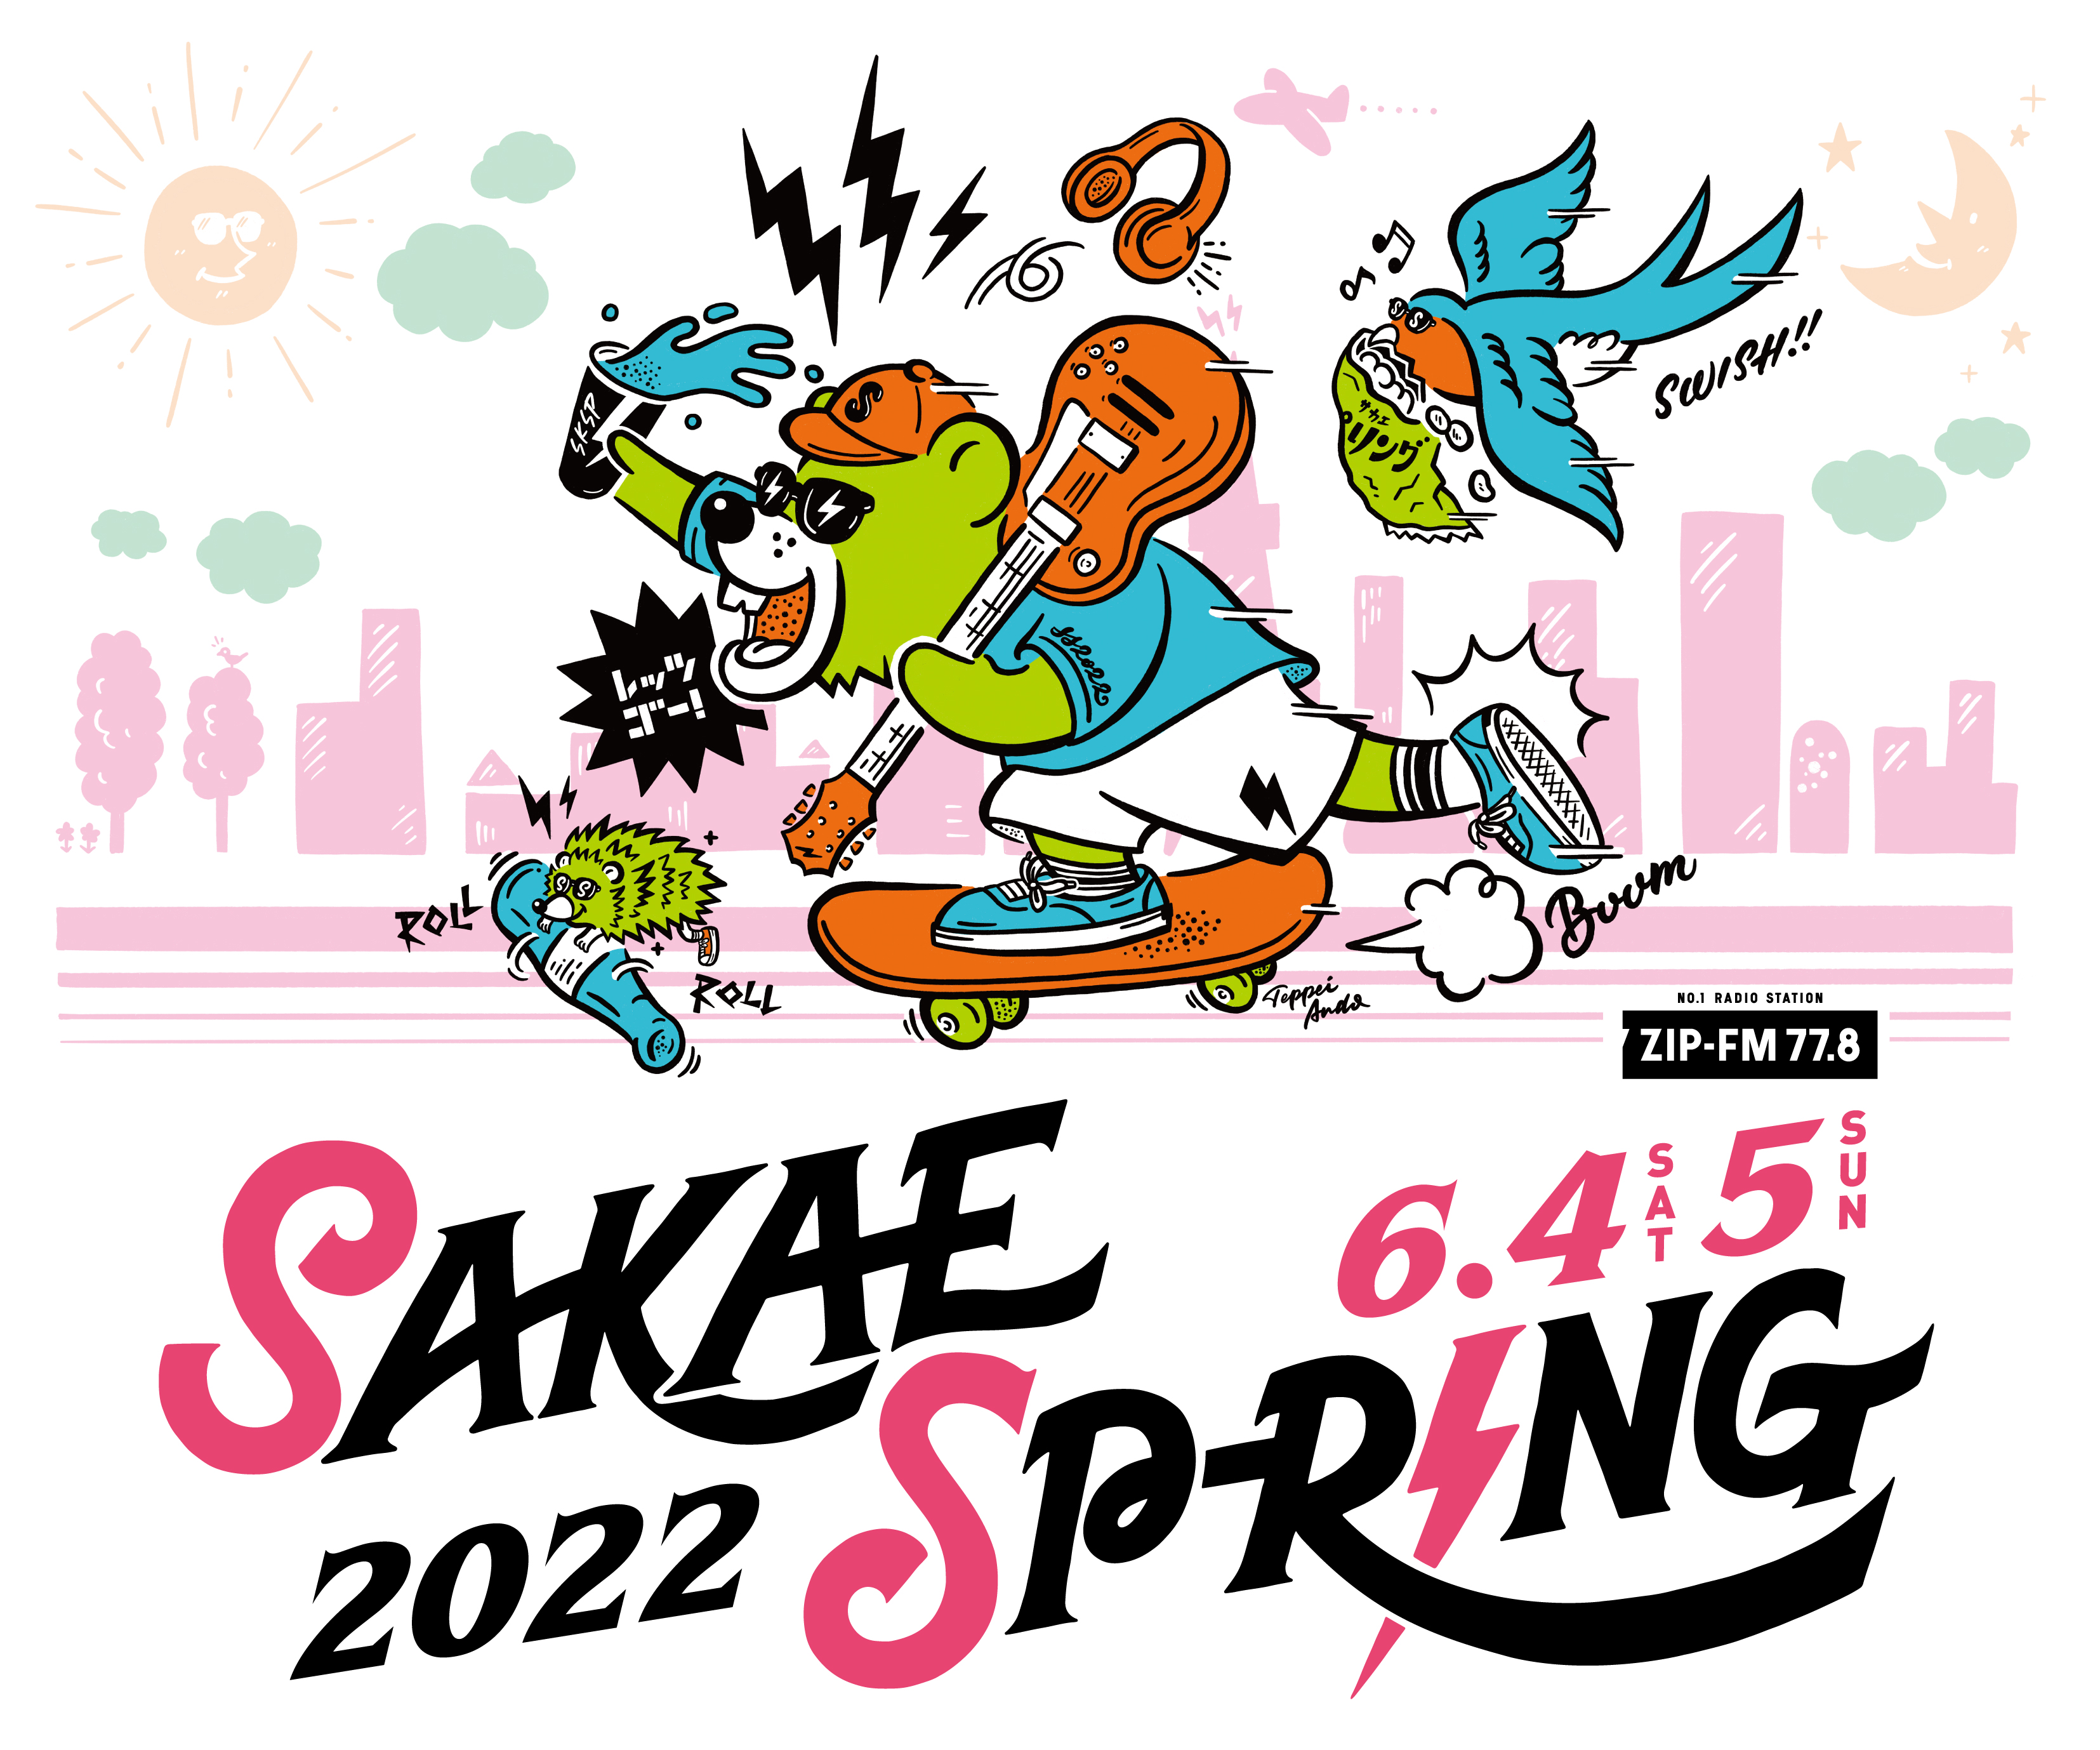 SAKAE SP-RING 2022 出演！